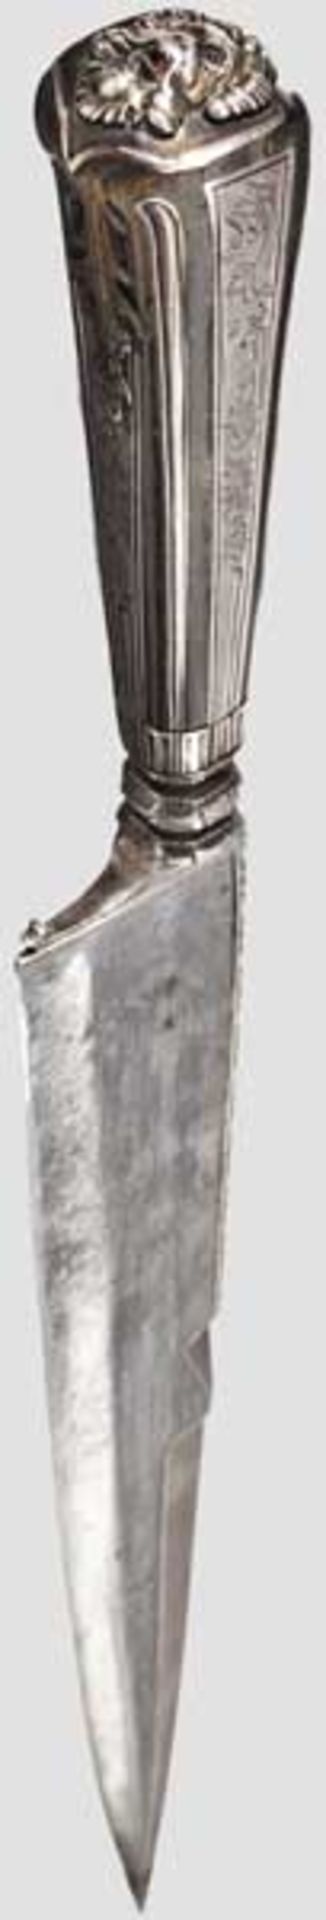 Jagdliches Luxusmesser mit Steinbockhorngriff, süddeutsch um 1740   Kräftige Rückenklinge mit - Bild 3 aus 4